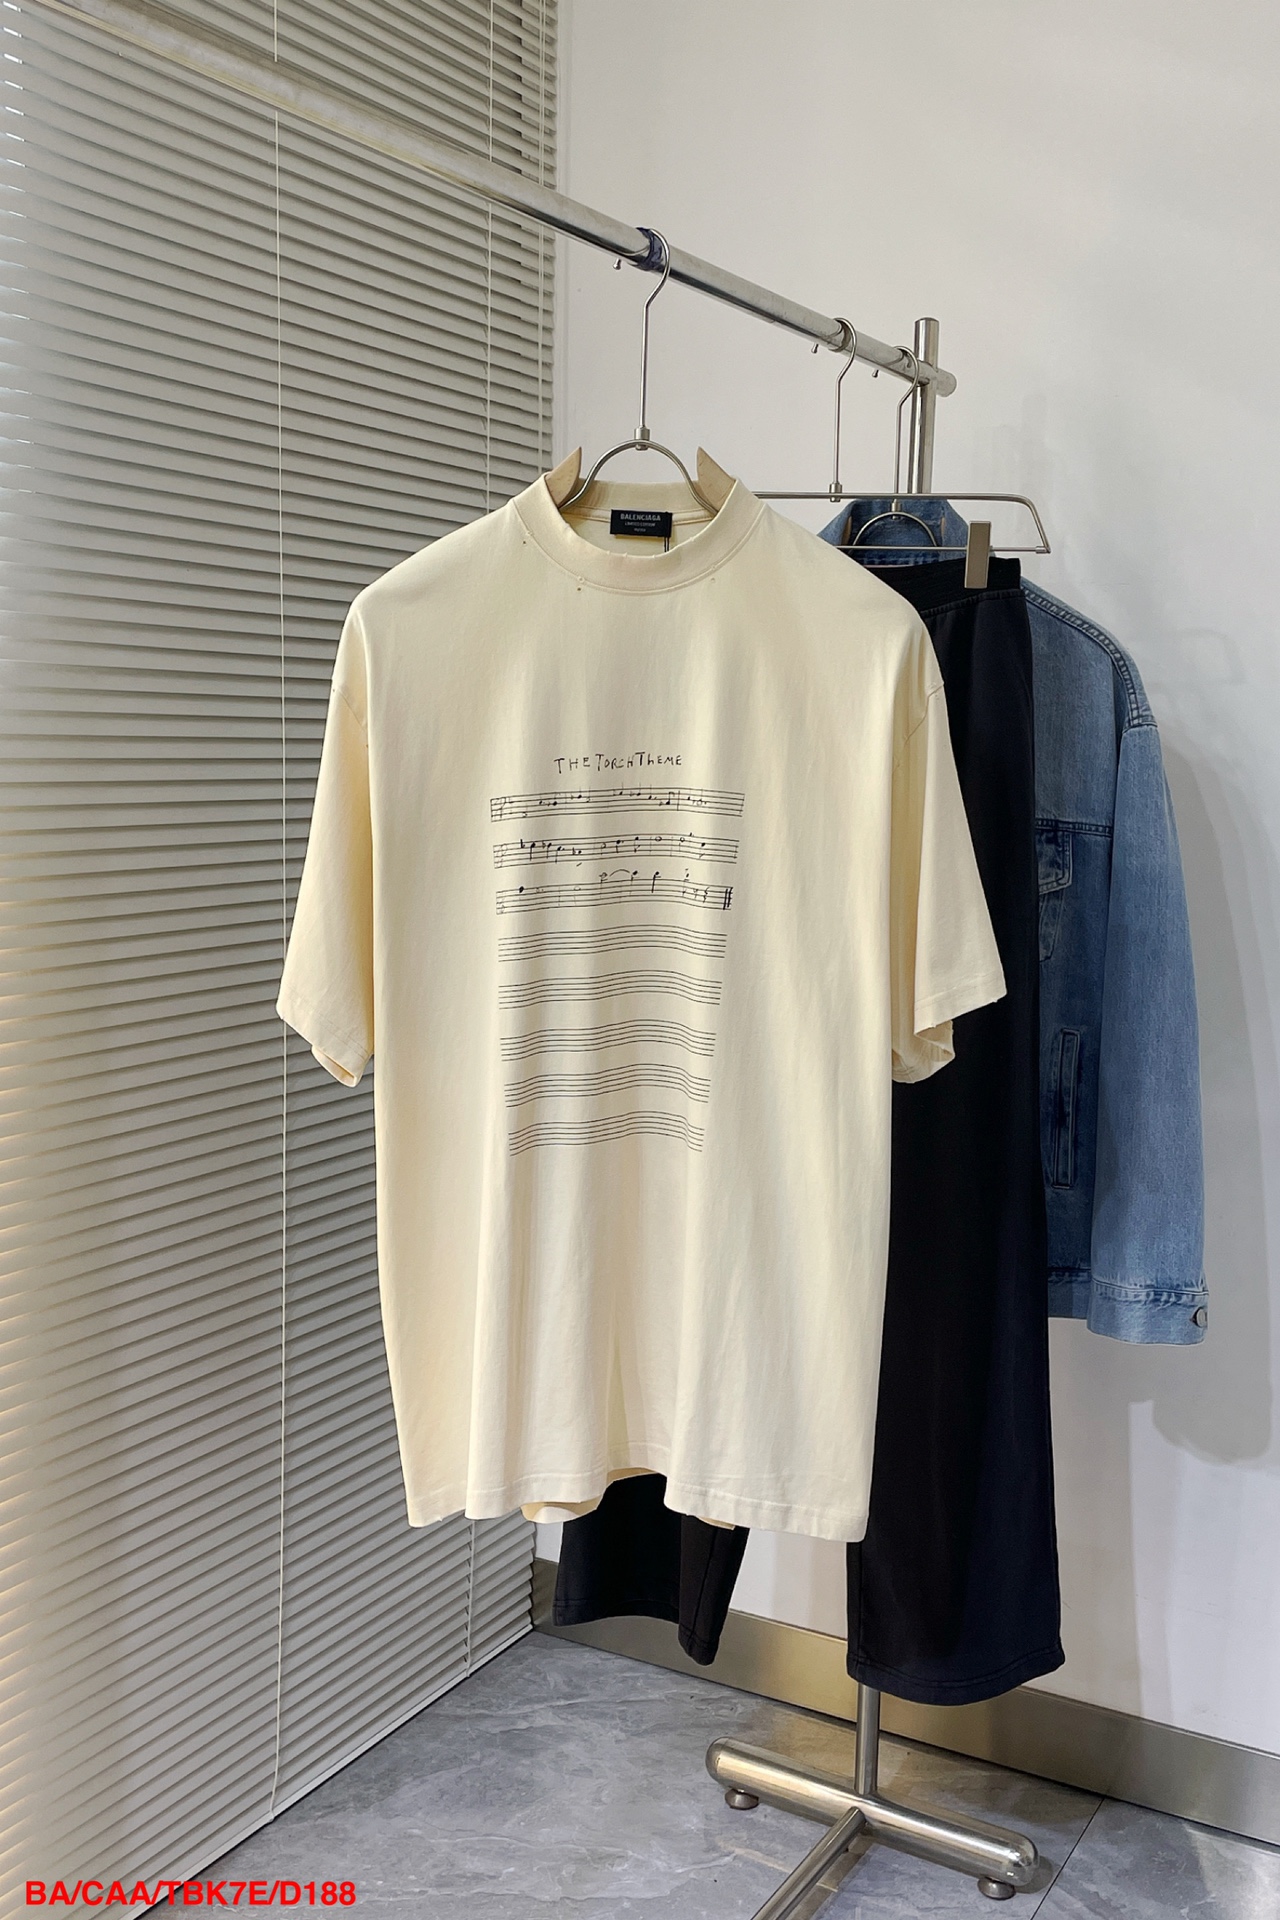 Balenciaga Kleding T-Shirt Mannen Fashion